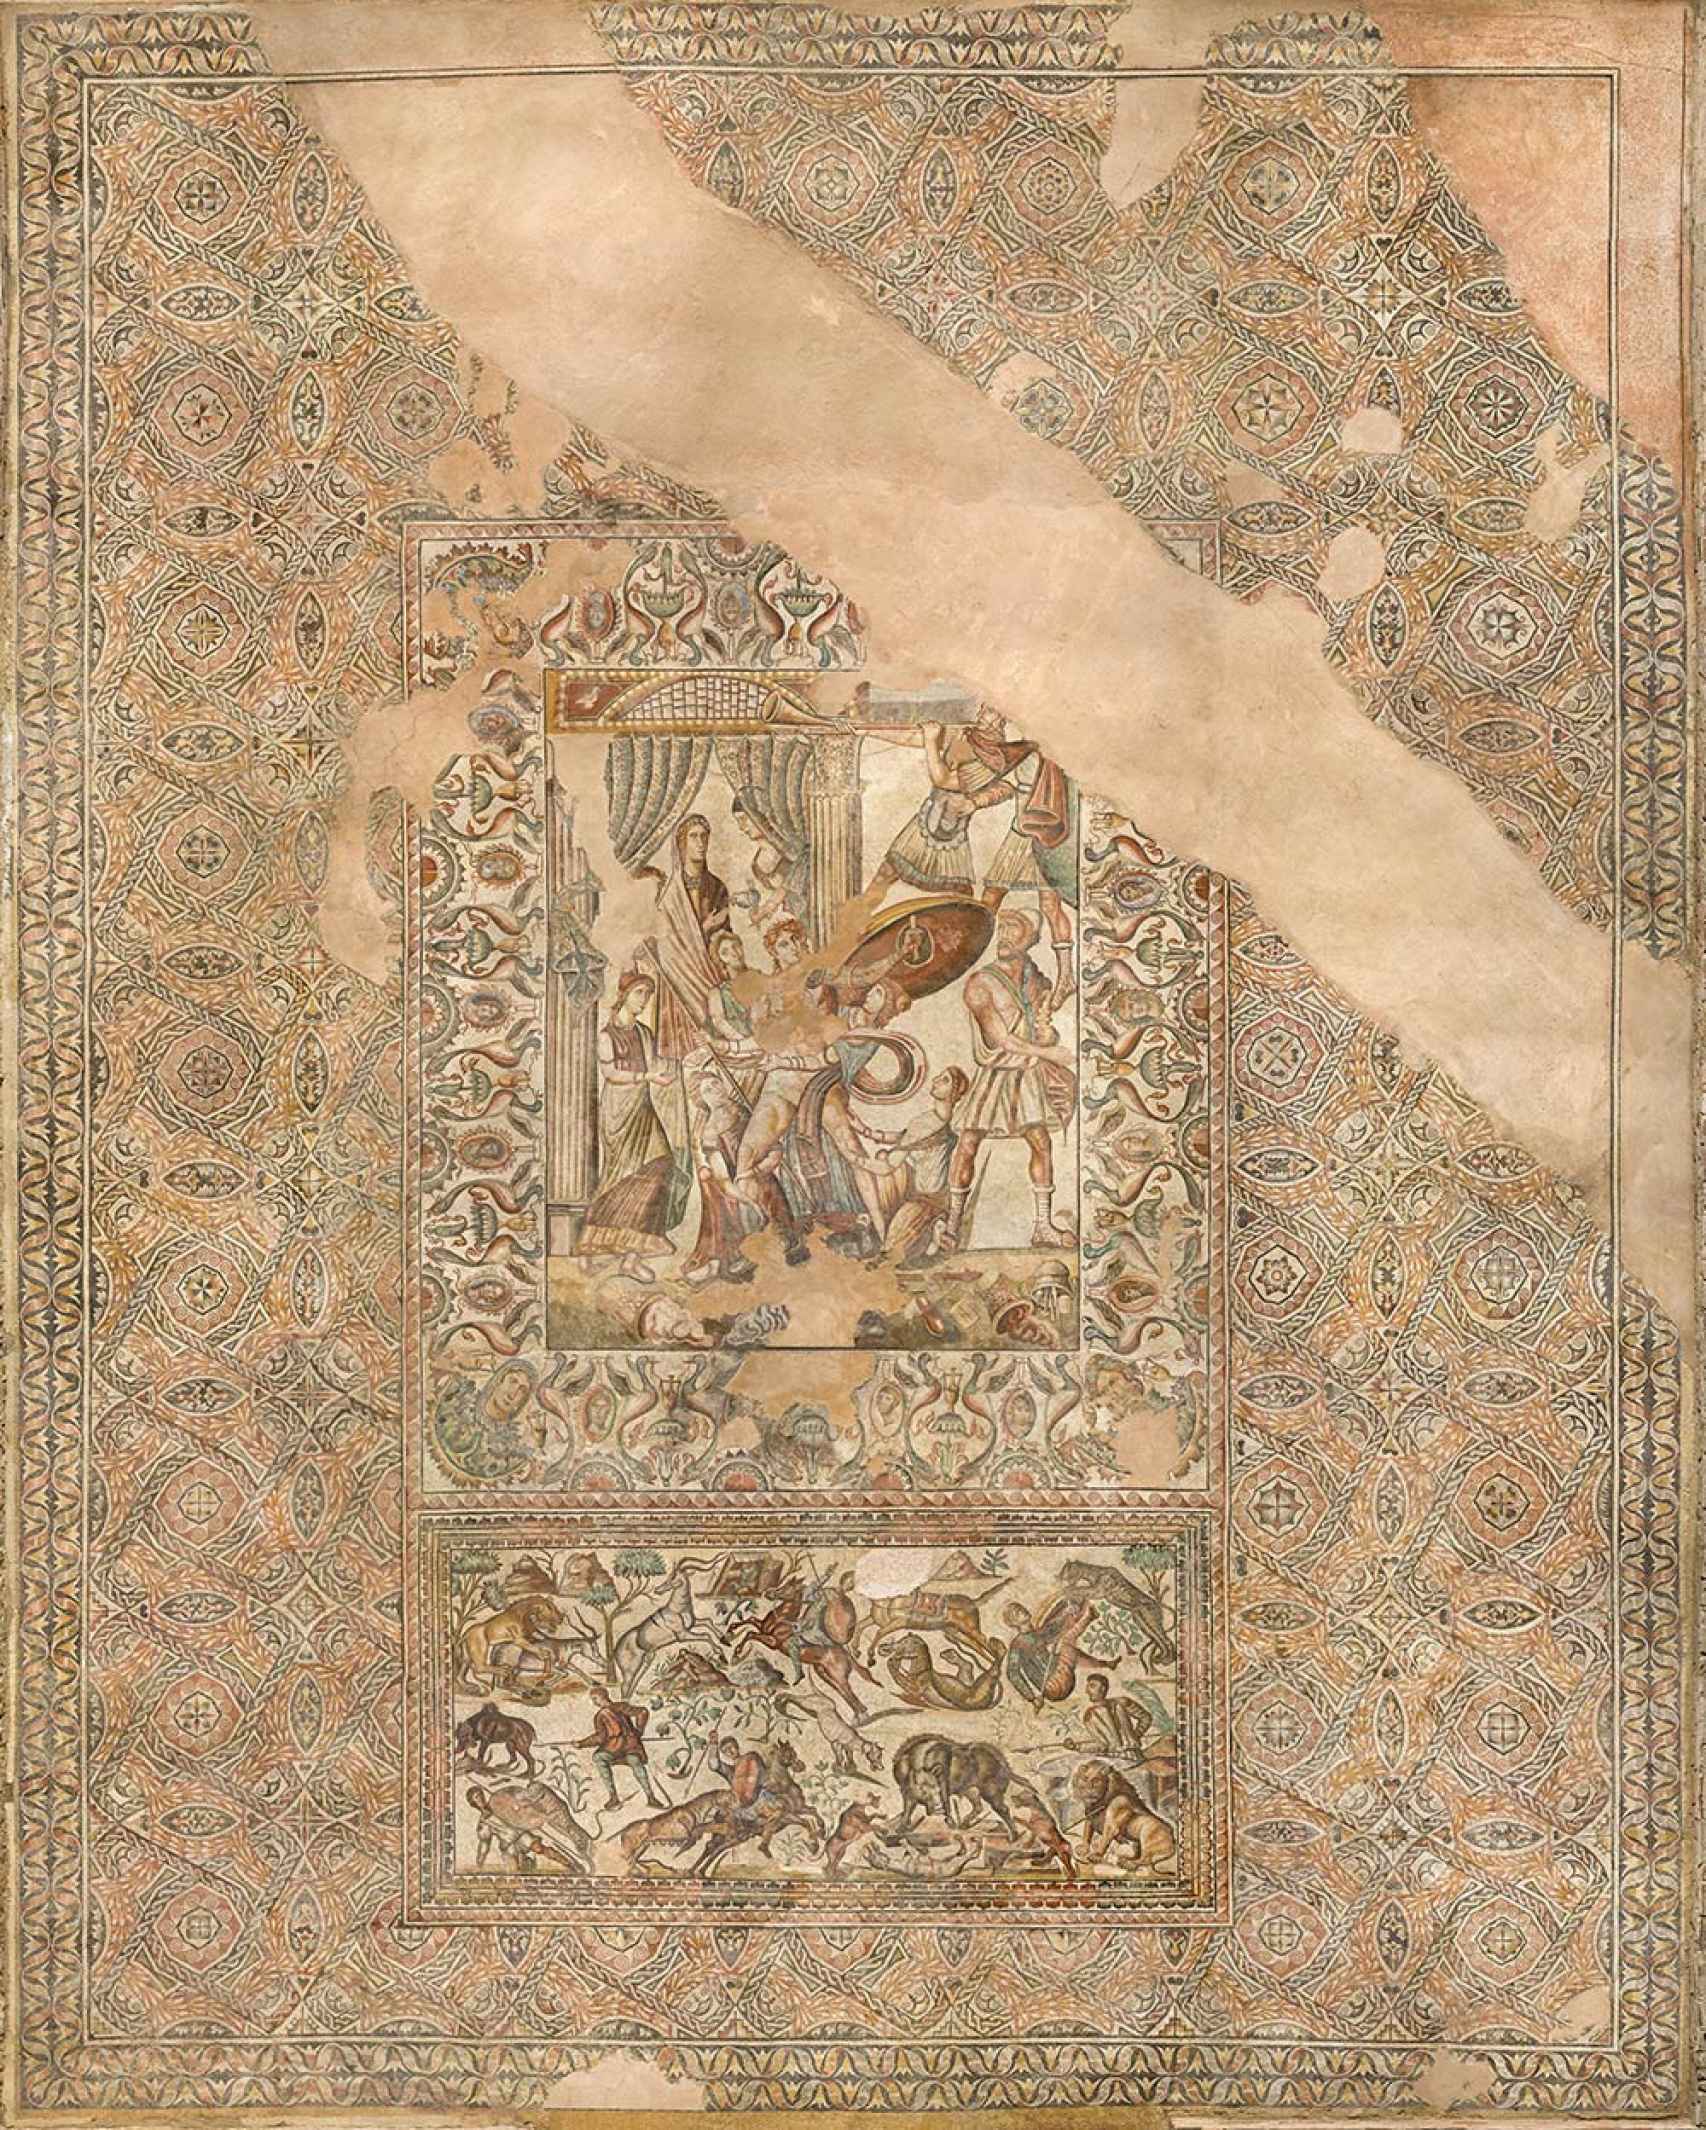 El mosaico figurativo de La Olmeda